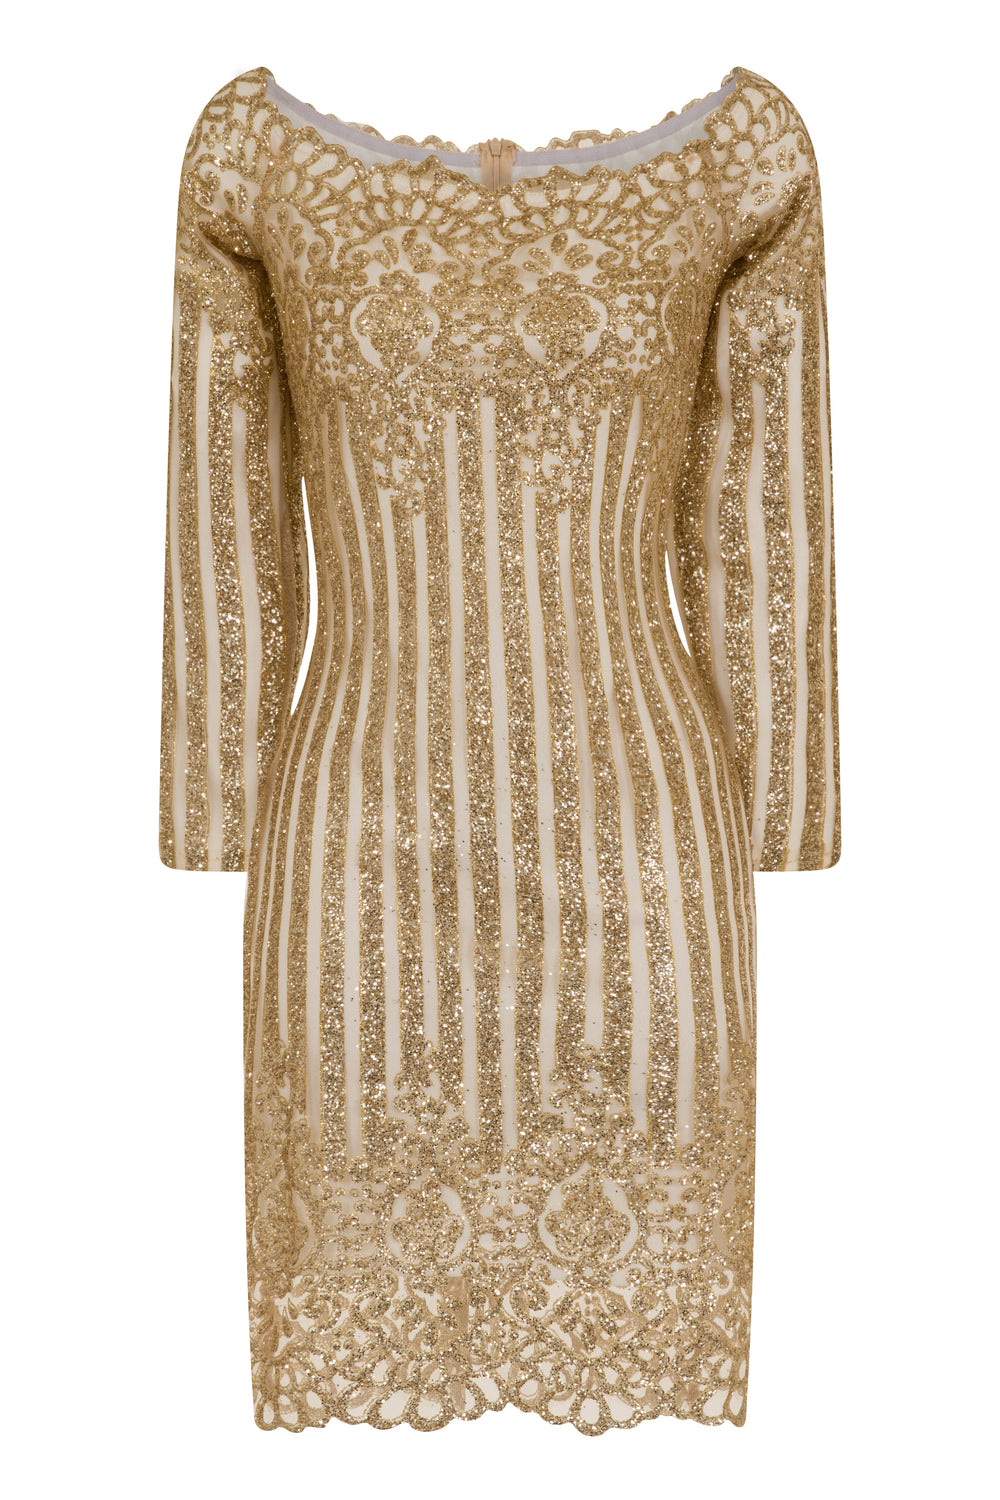 Amelia Bardot Sparkle Glitter White & Gold Victorian Dress